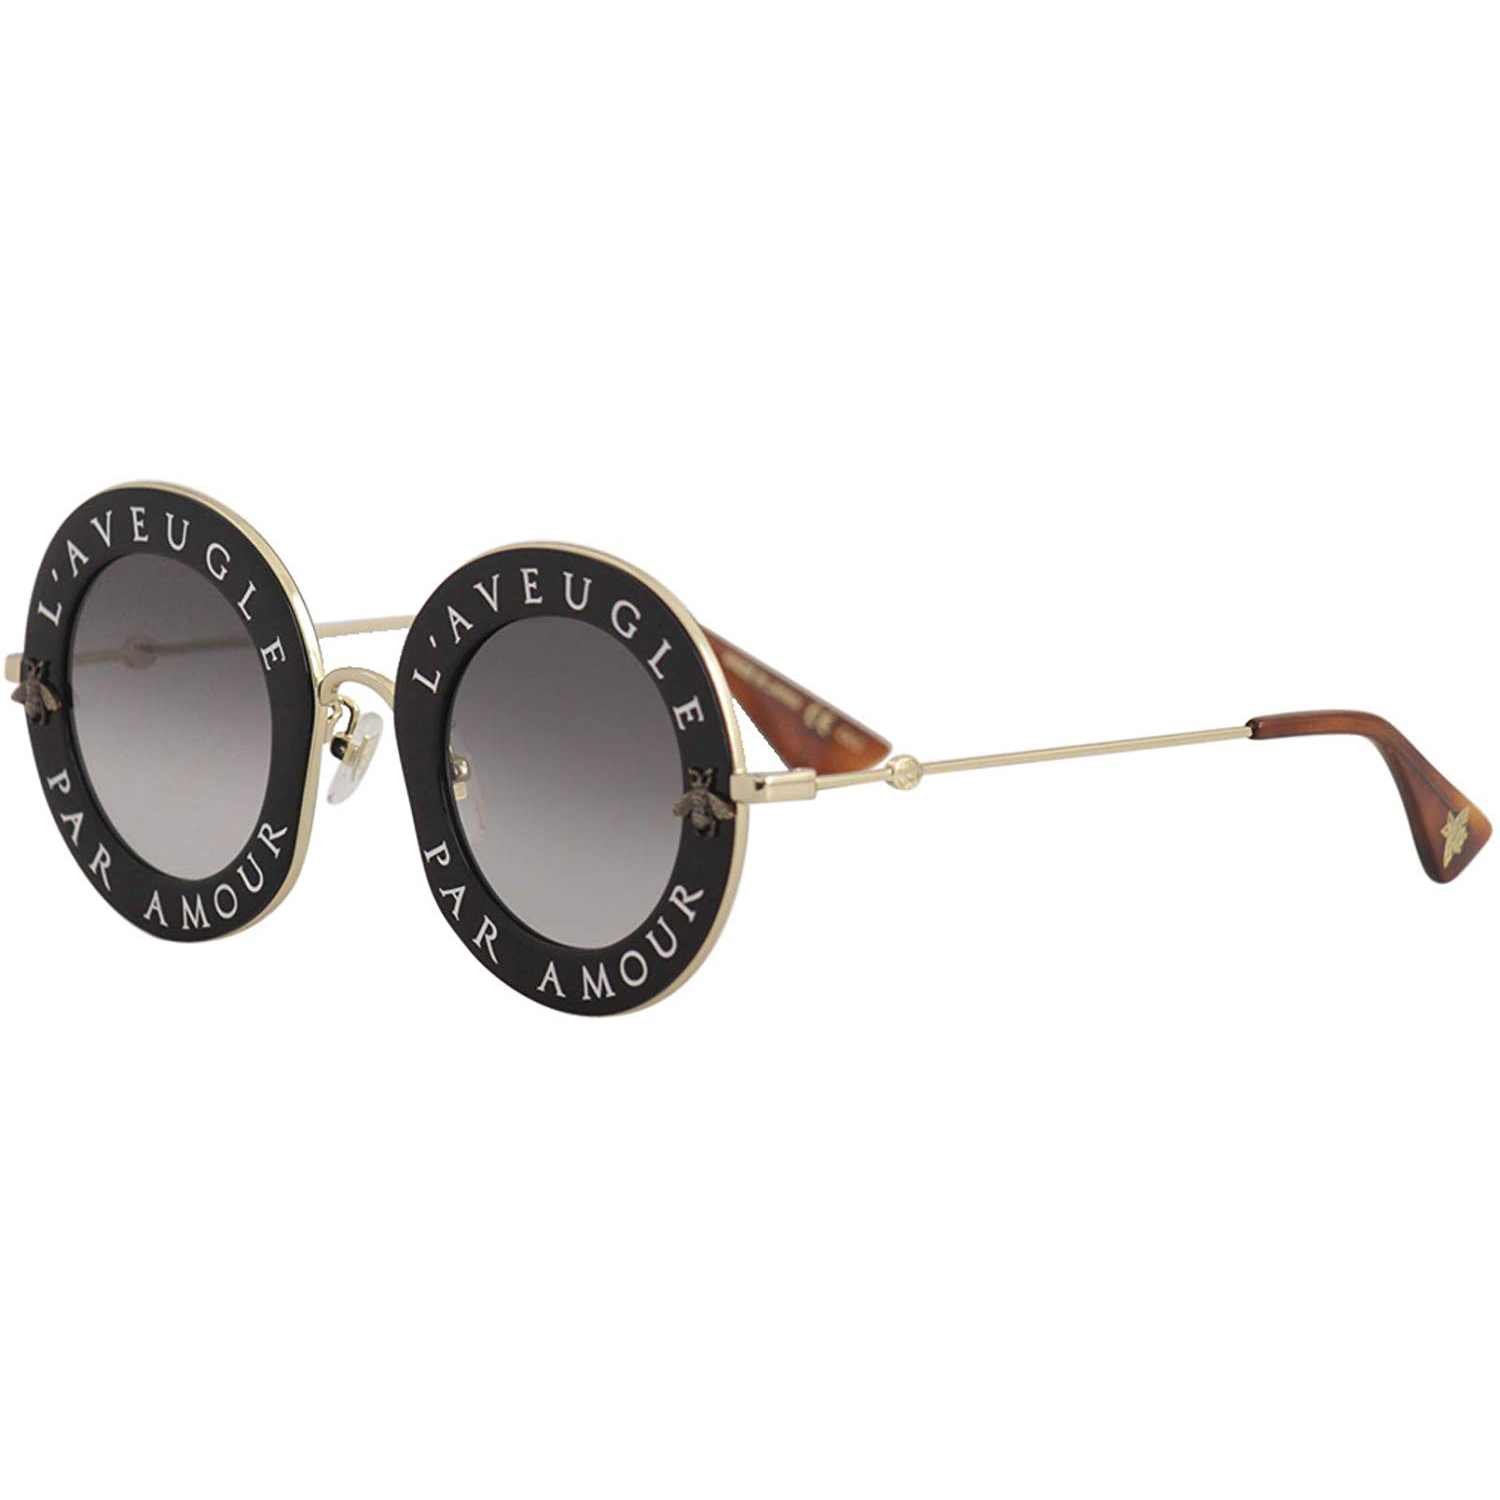 Gucci GG 0113S 001 Black & Gold w/Grey Gradient Sunglasses